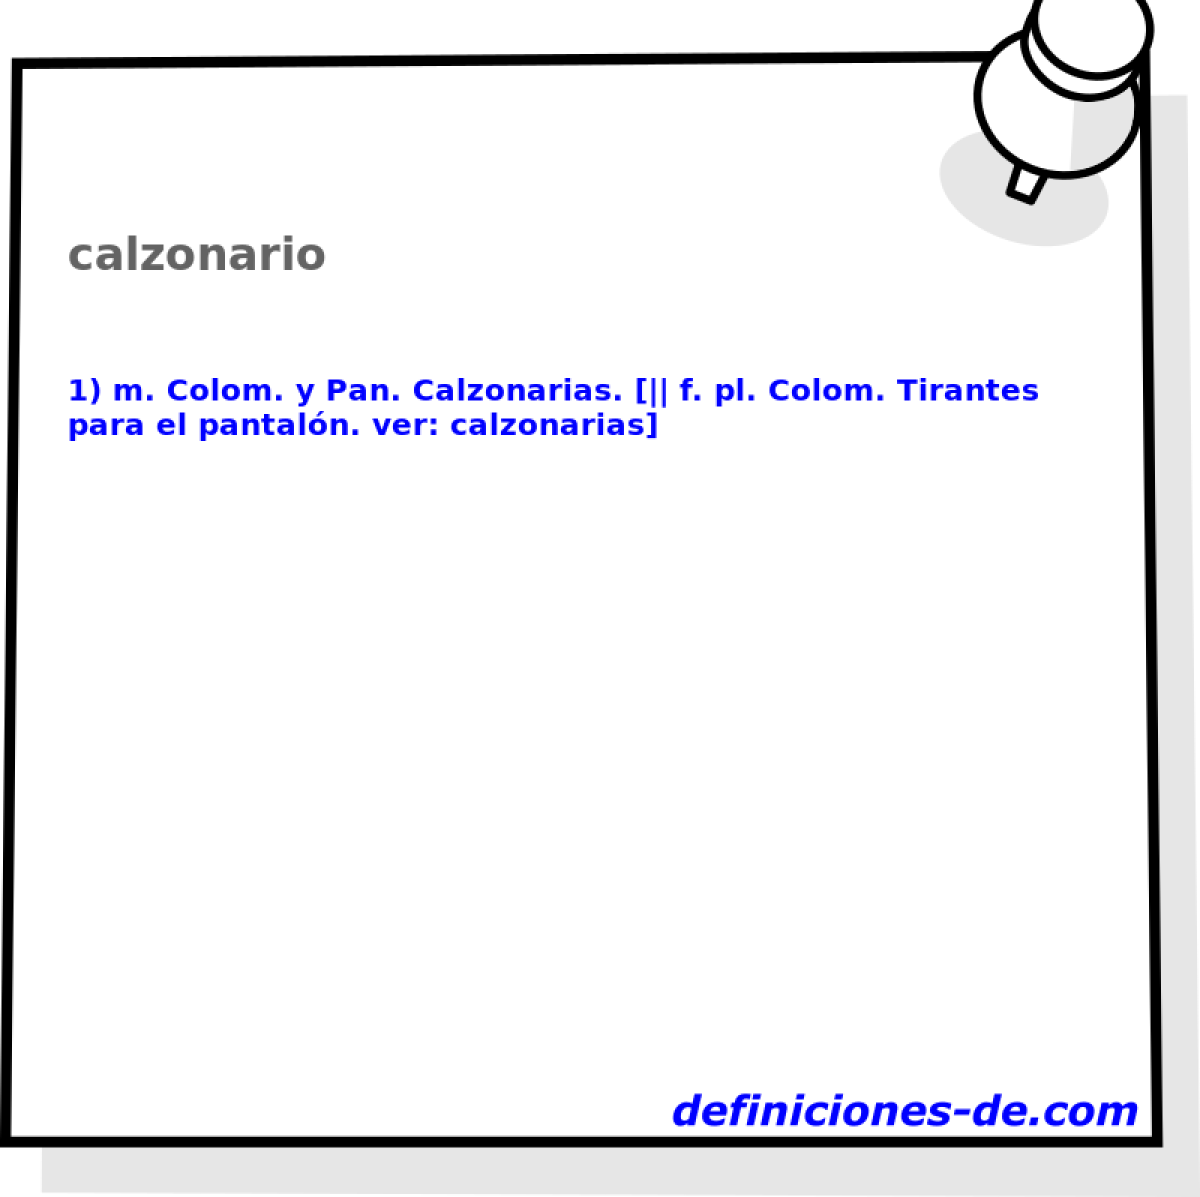 calzonario 